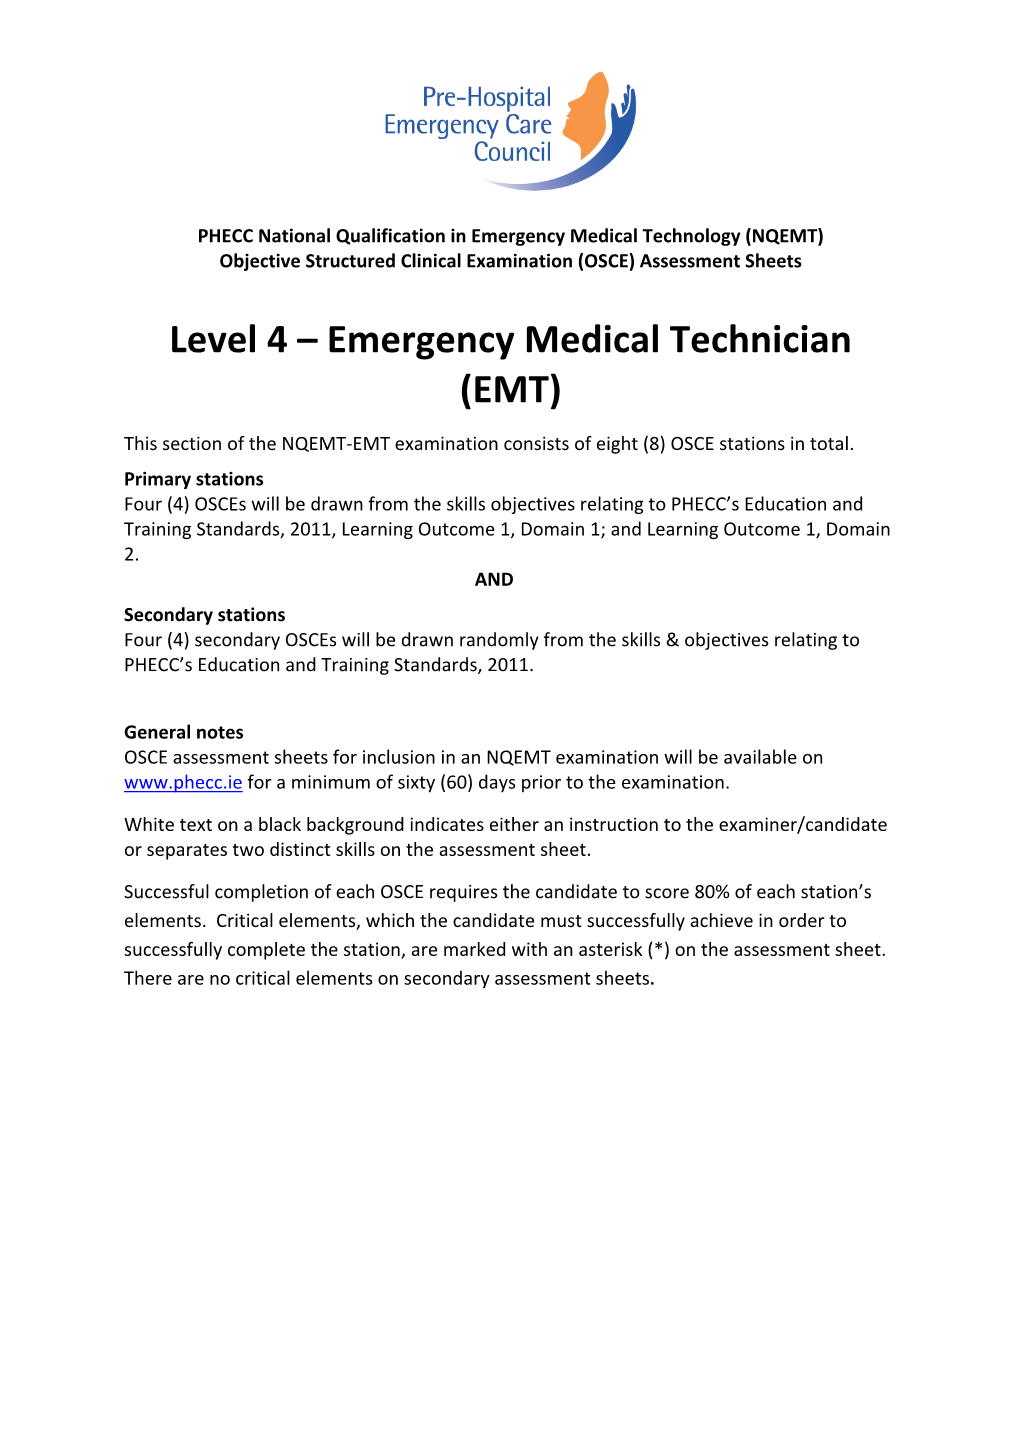 Level 4 – Emergency Medical Technician (EMT)